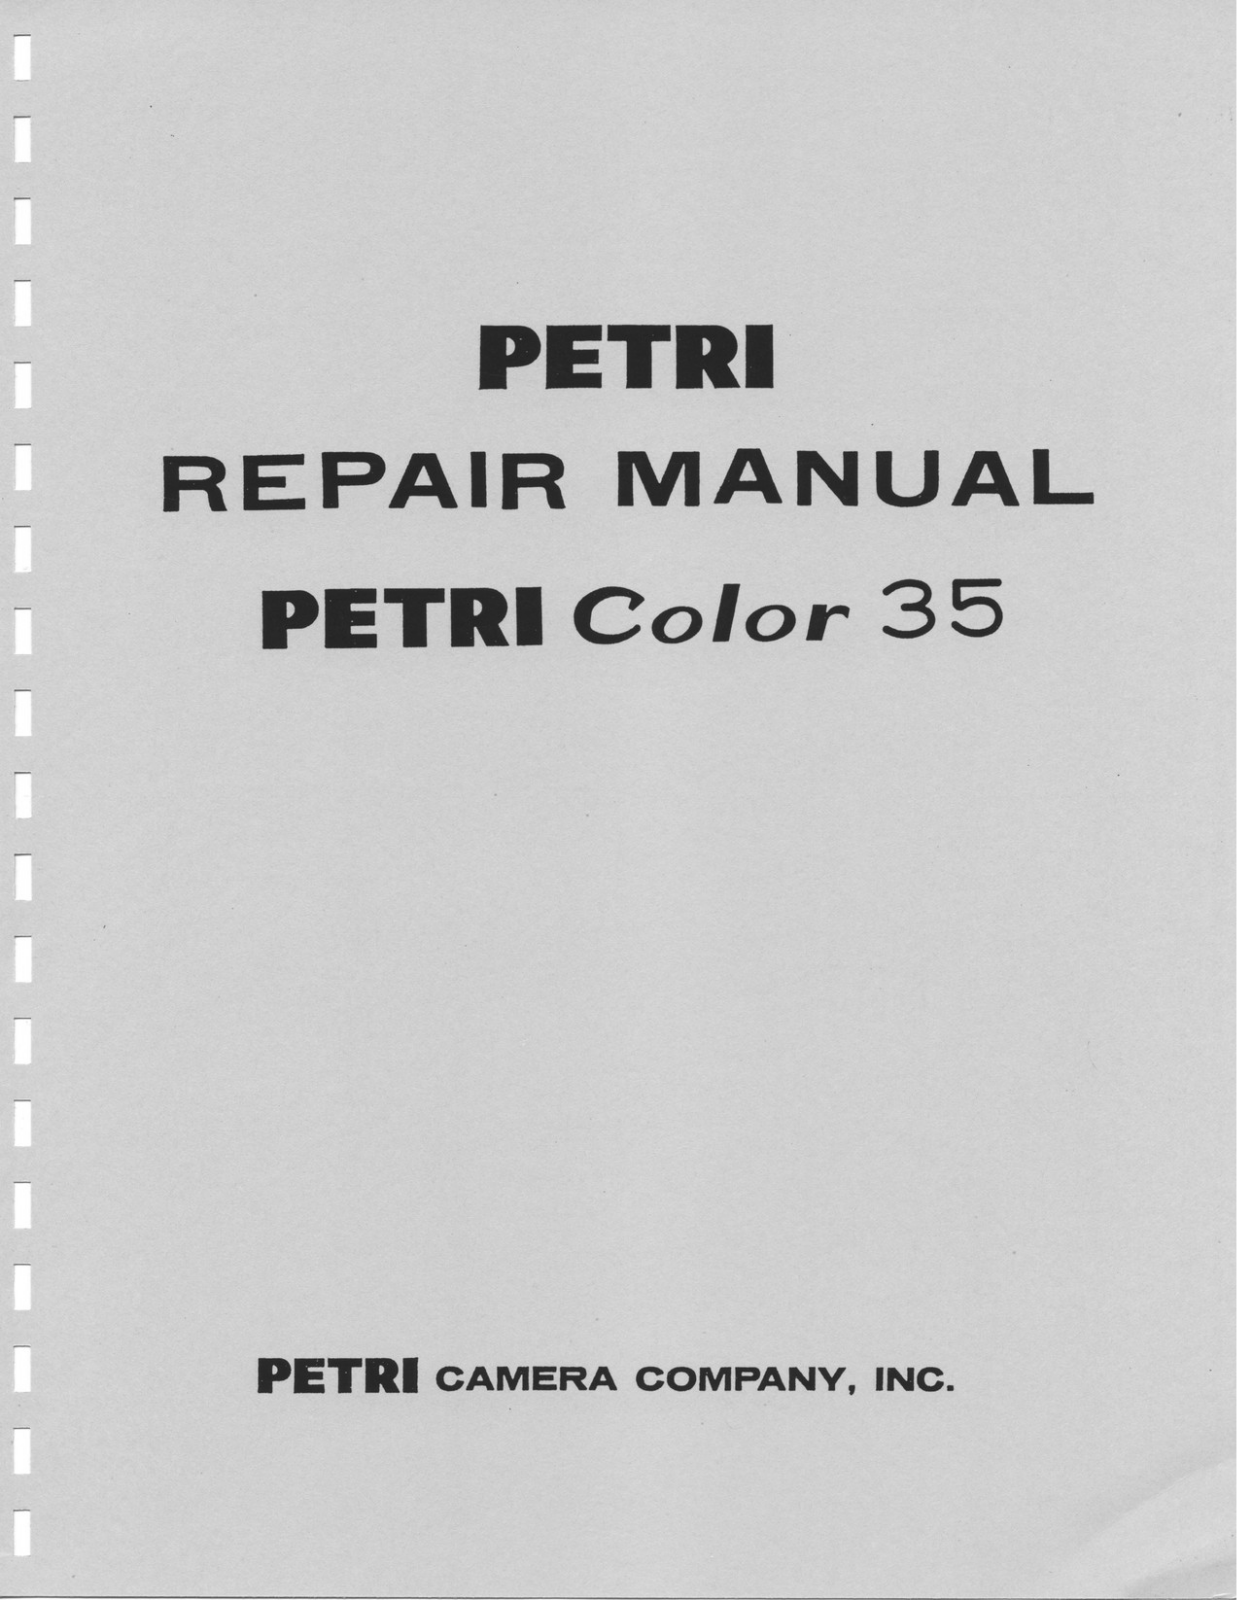 Petri Color 35 Repair Manual